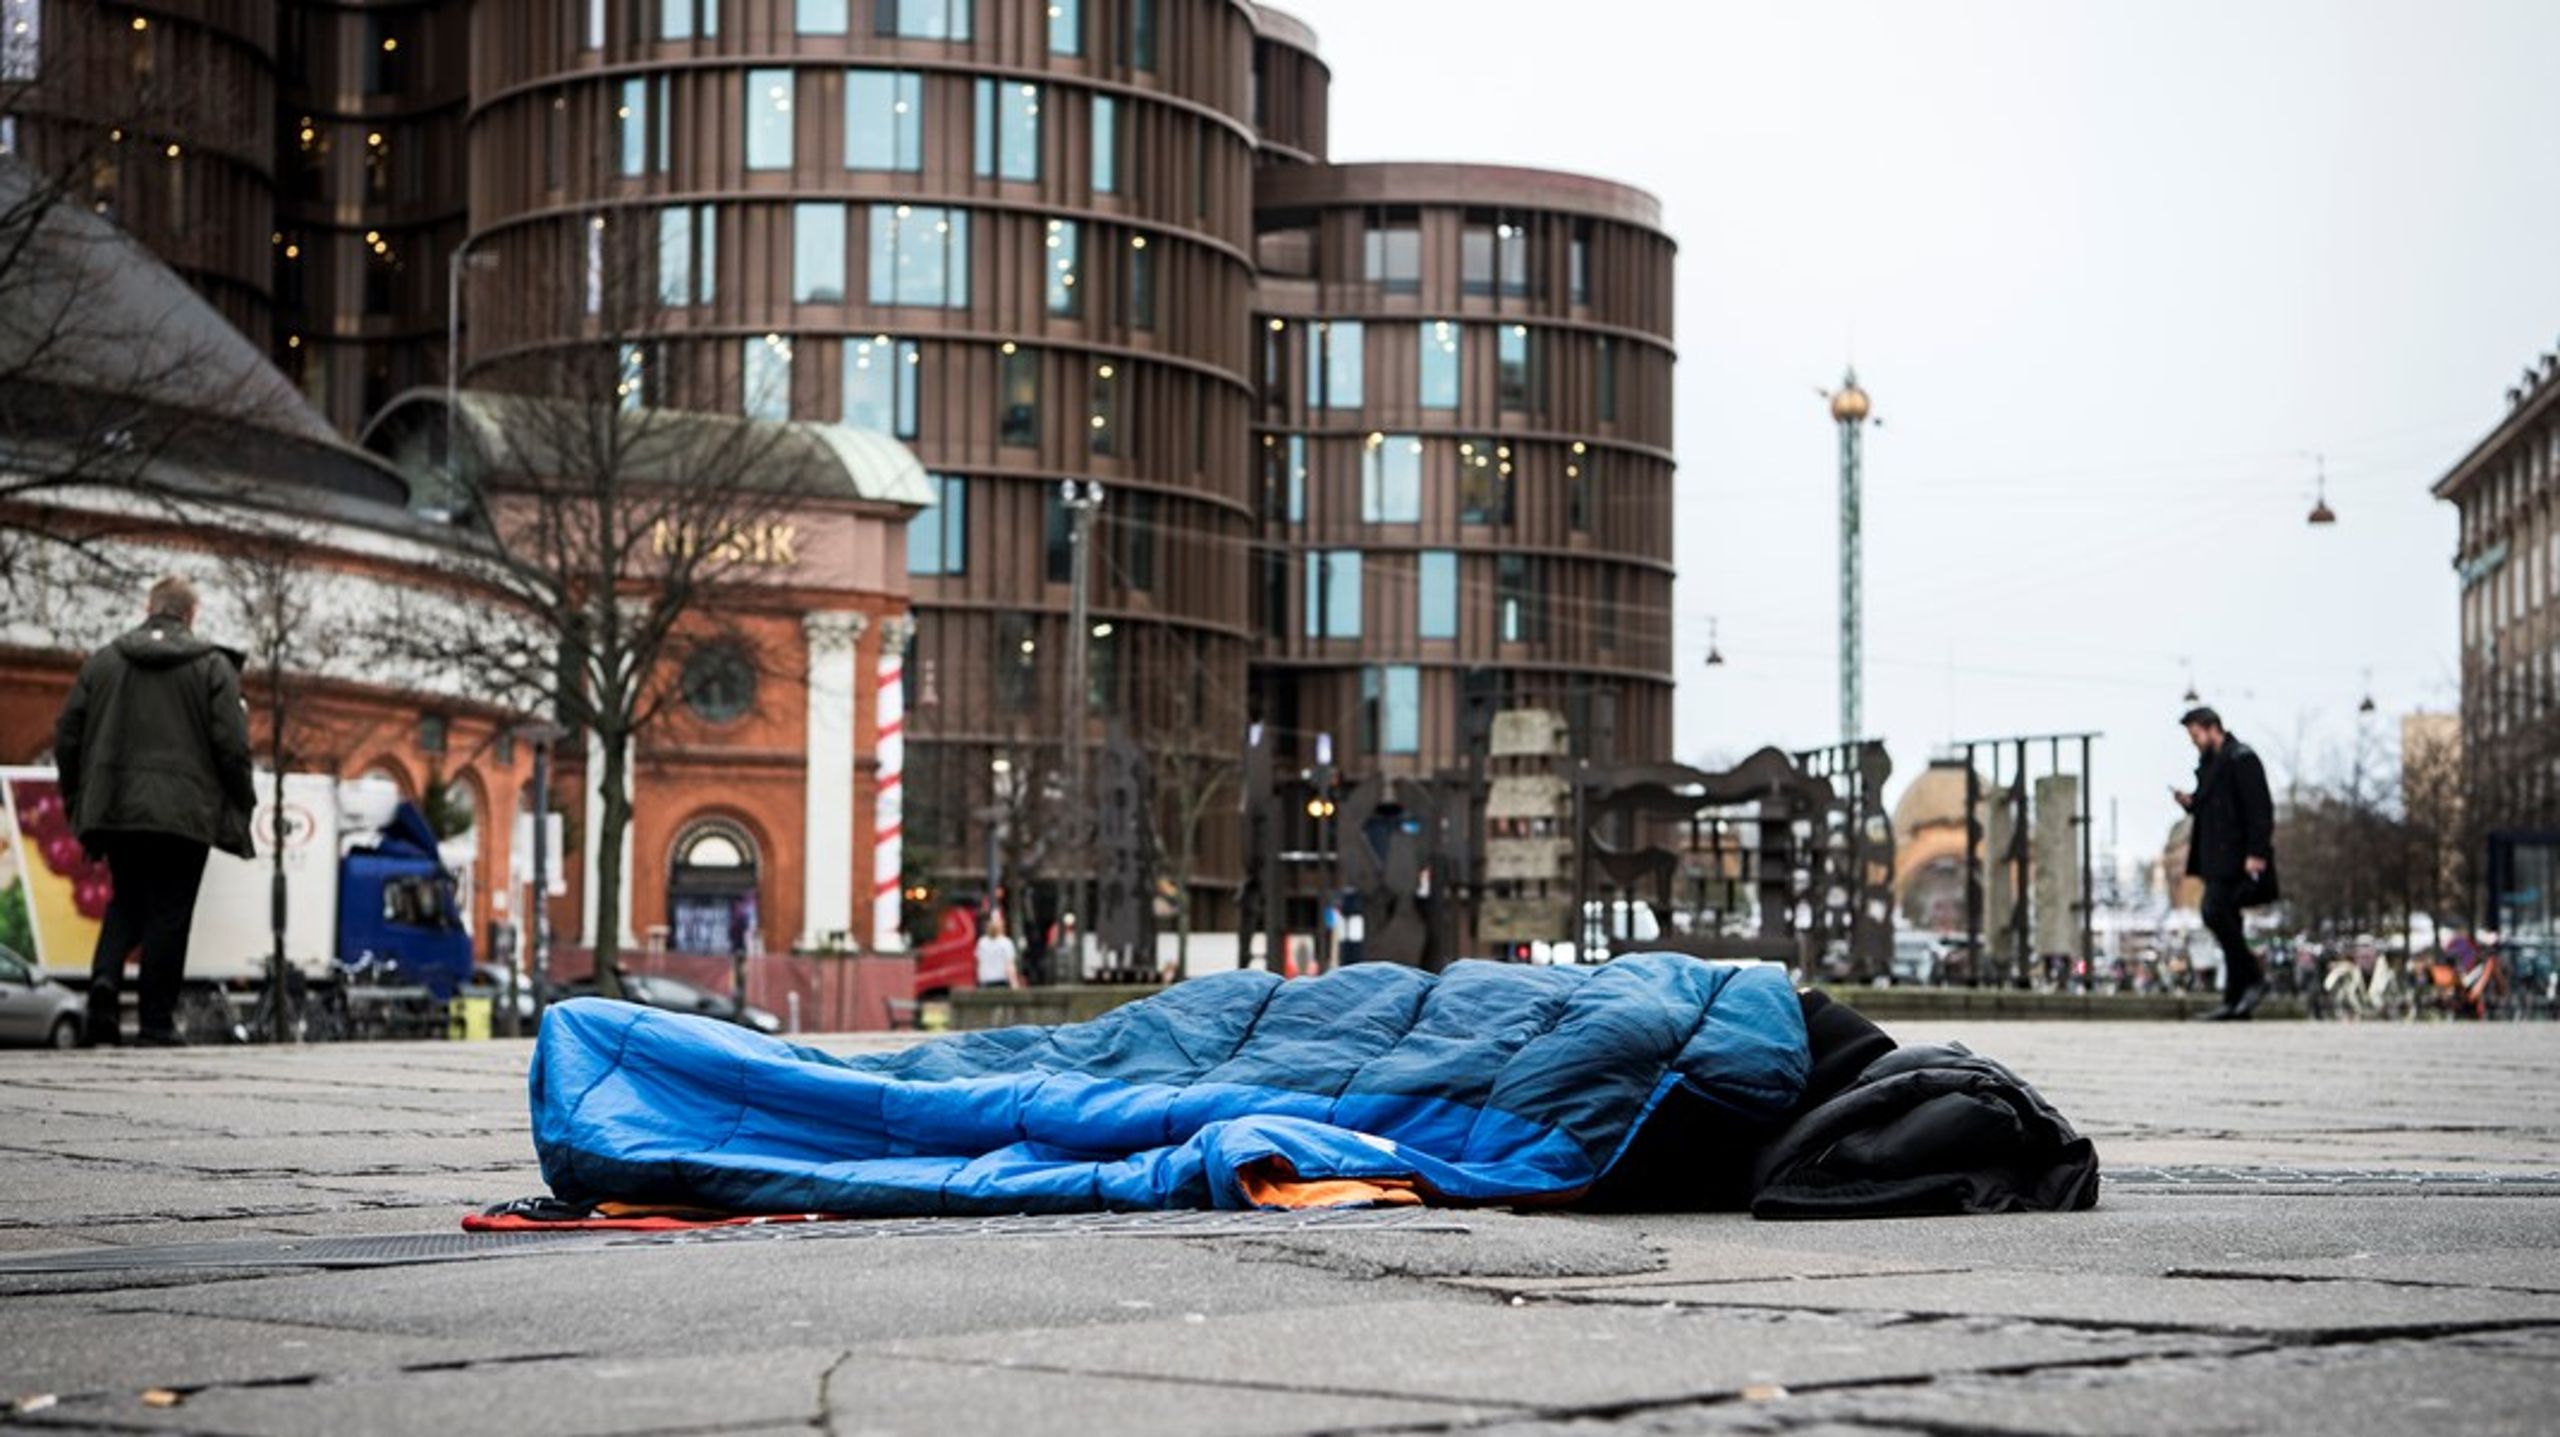 Problemet med at&nbsp;fremskaffe flere&nbsp;boliger til hjemløse&nbsp;er størst i København og hovedstadsområdet, da der her både er flest hjemløse og størst mangel på billige boliger generelt.&nbsp;